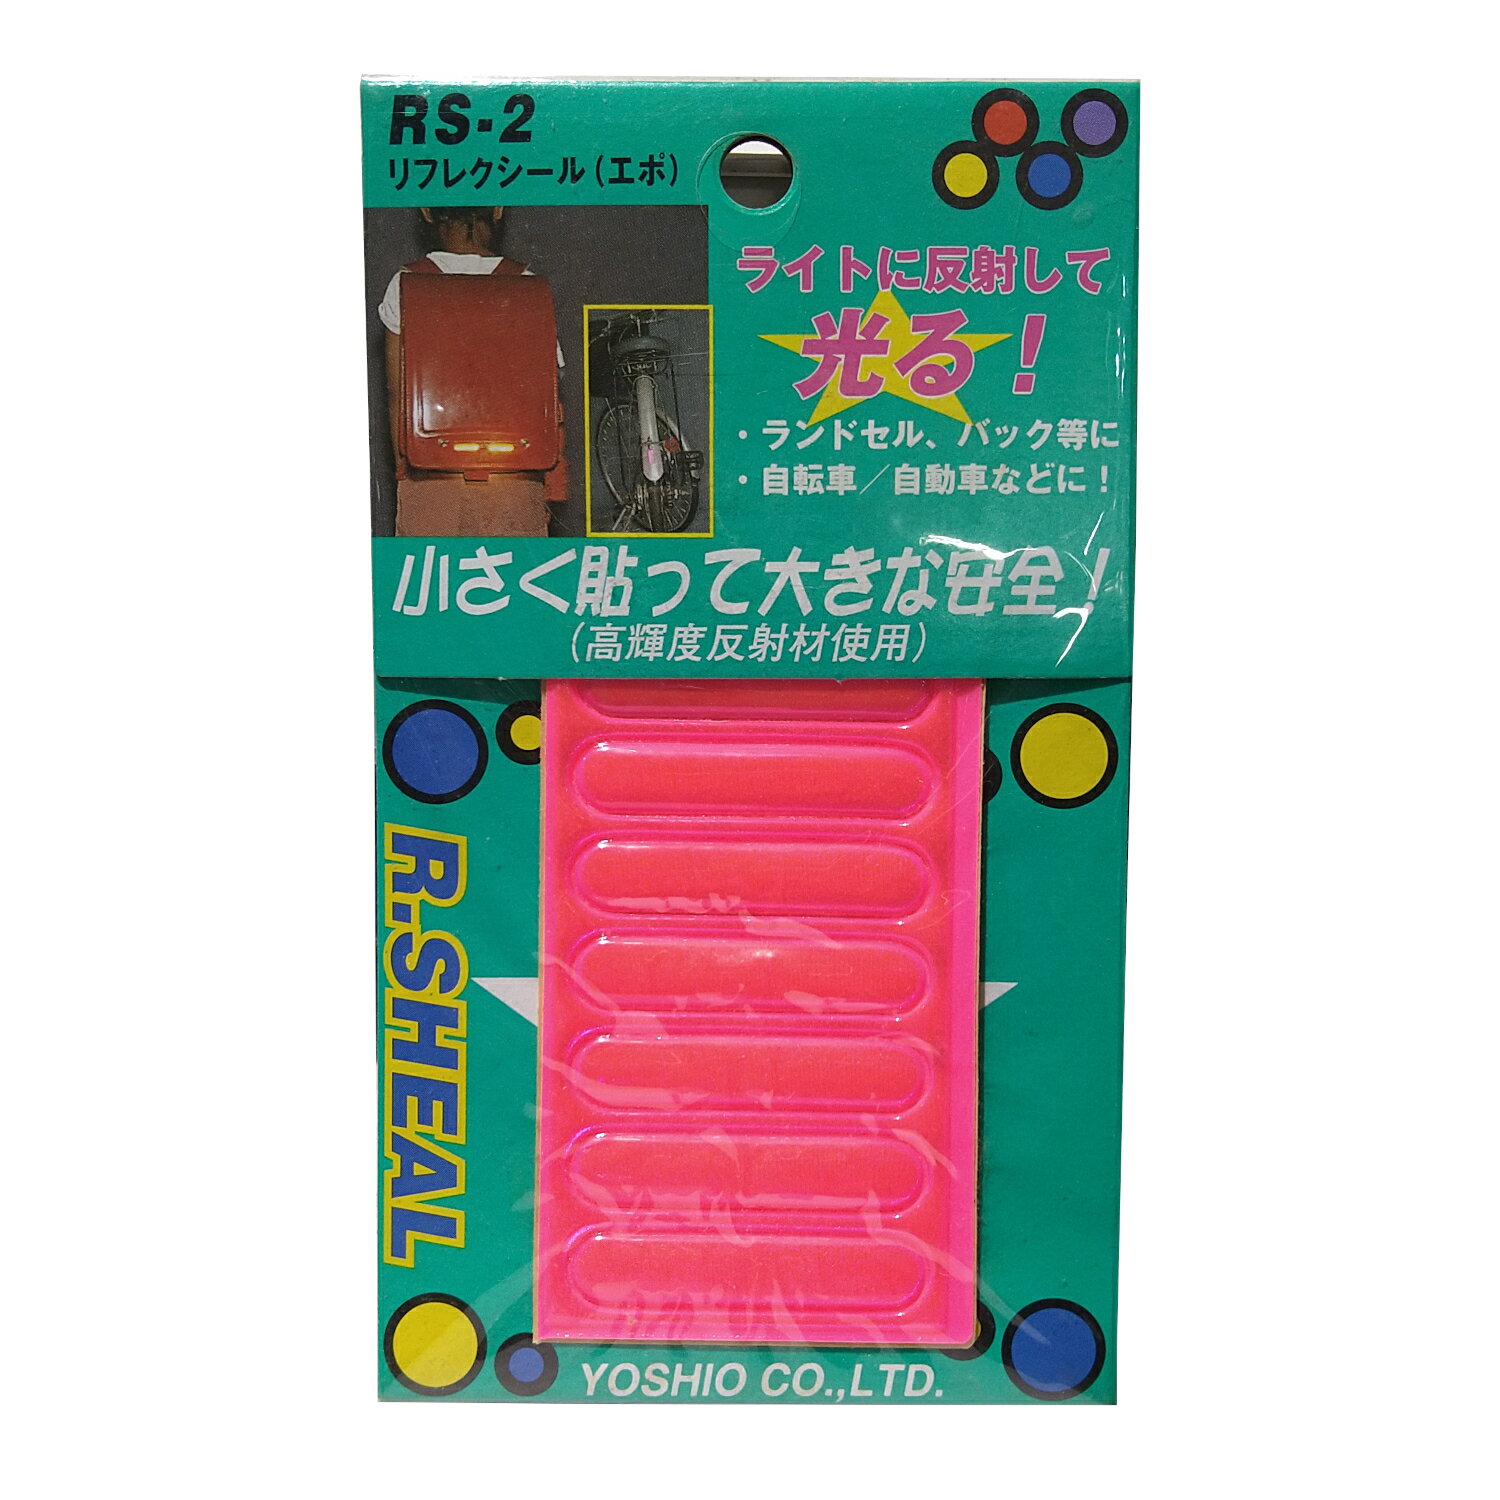 【アウトレット】リフレクシール（エポ） ピンク 自転車 ランドセル パーツ 反射材 安全グッズ